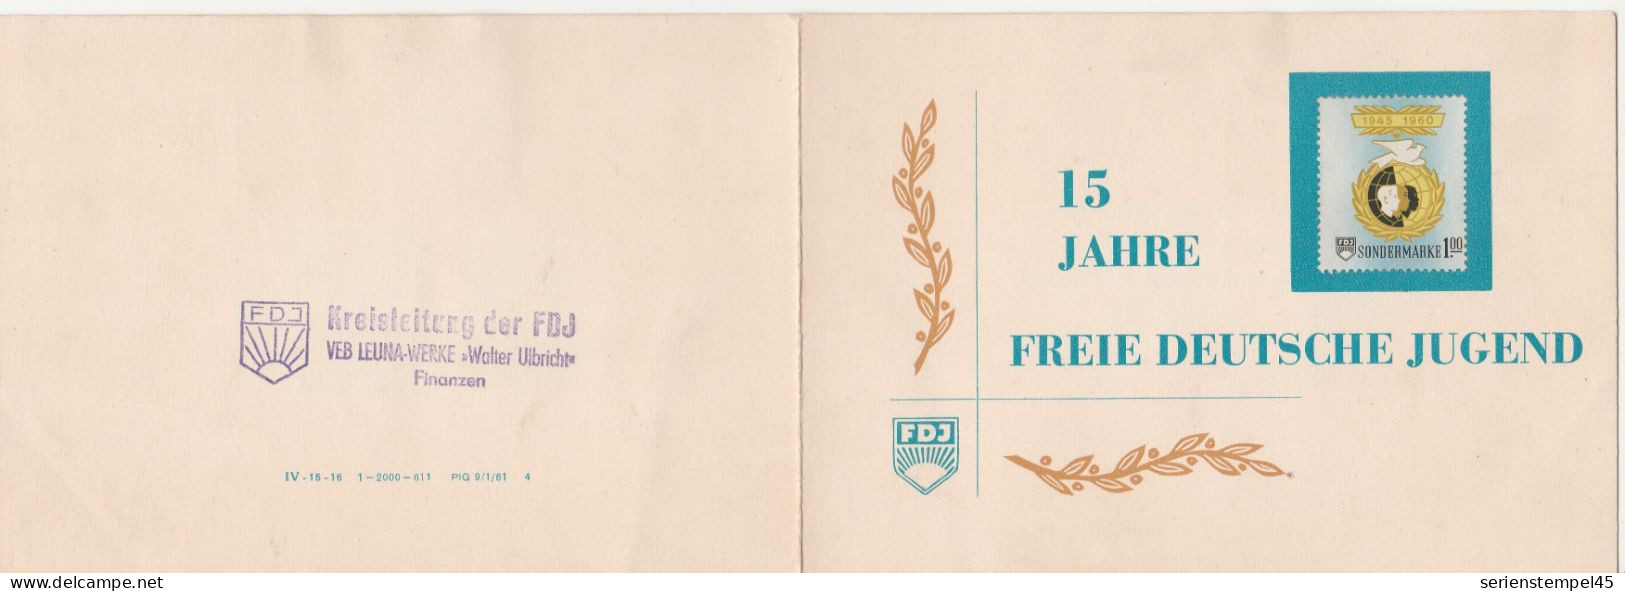 DDR 15 Jahre Freie Deutsche Jugend 1945 - 1960 Sondermarke 1 M 3 Marken FDJ Klappkarte - Storia Postale